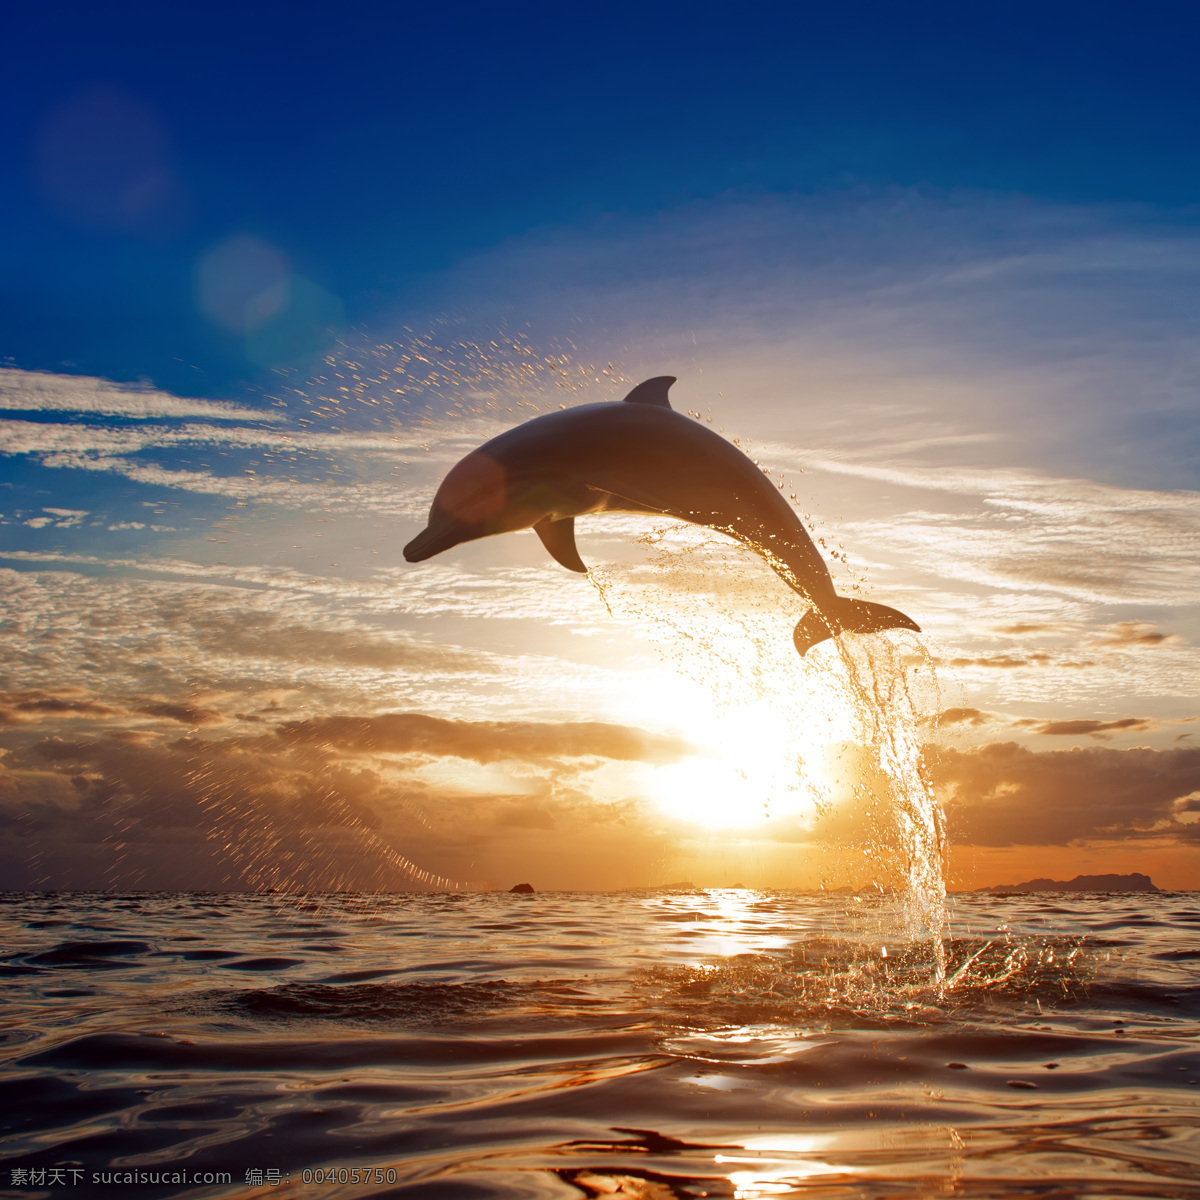 跳出 海 面的 海豚 鱼类动物 海底生物 水中生物 海洋生物 海洋动物 动物世界 生物世界 黑色